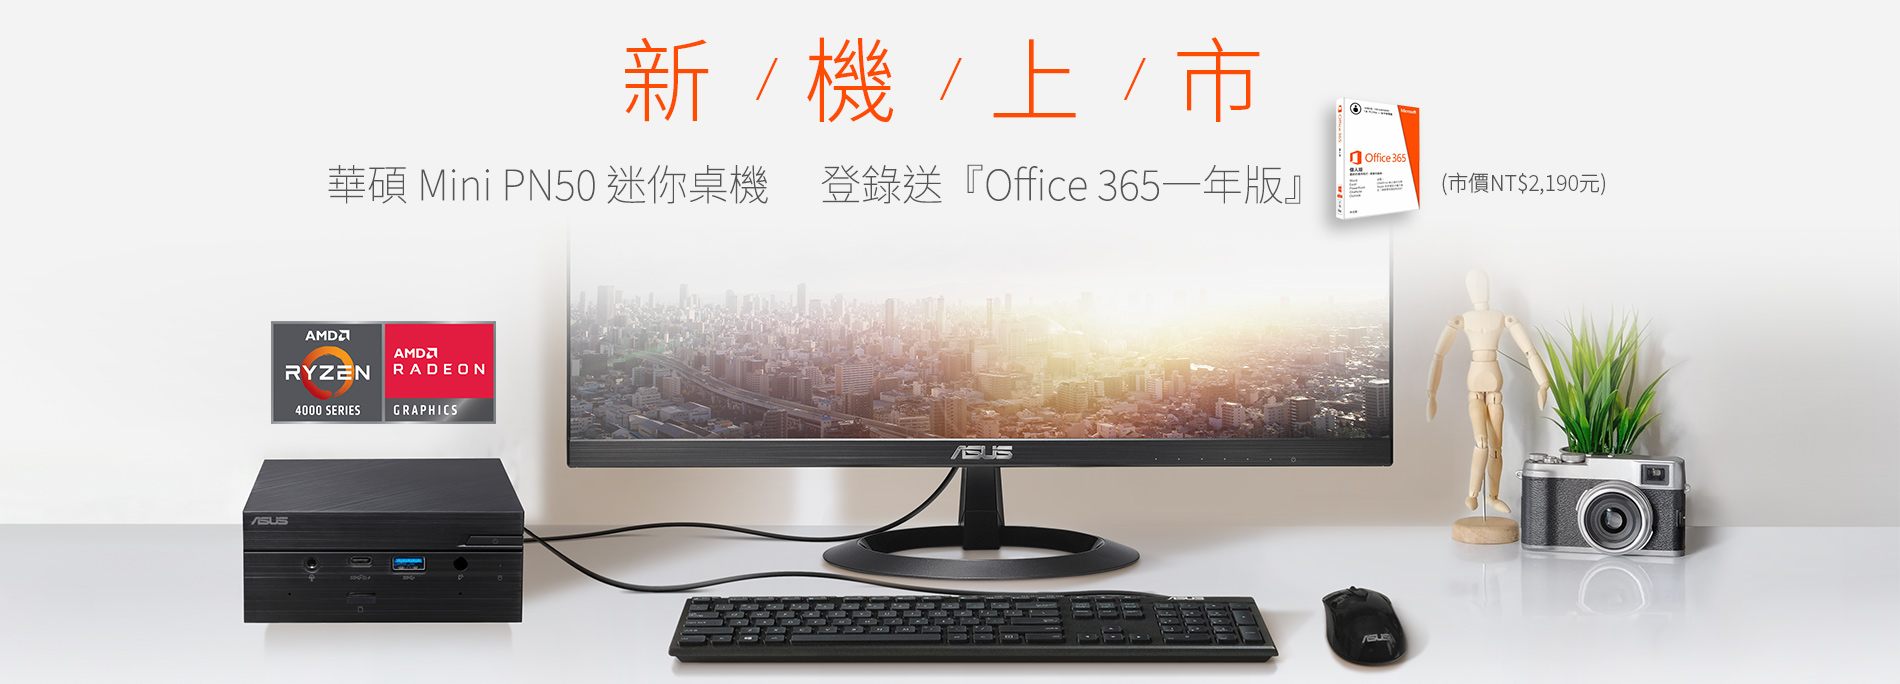 【新機上市】活動期間購買華碩 Mini PC PN50 迷你桌上型電腦全機種，官網登錄送『Office 365一年版』(市價NT$2,190元)